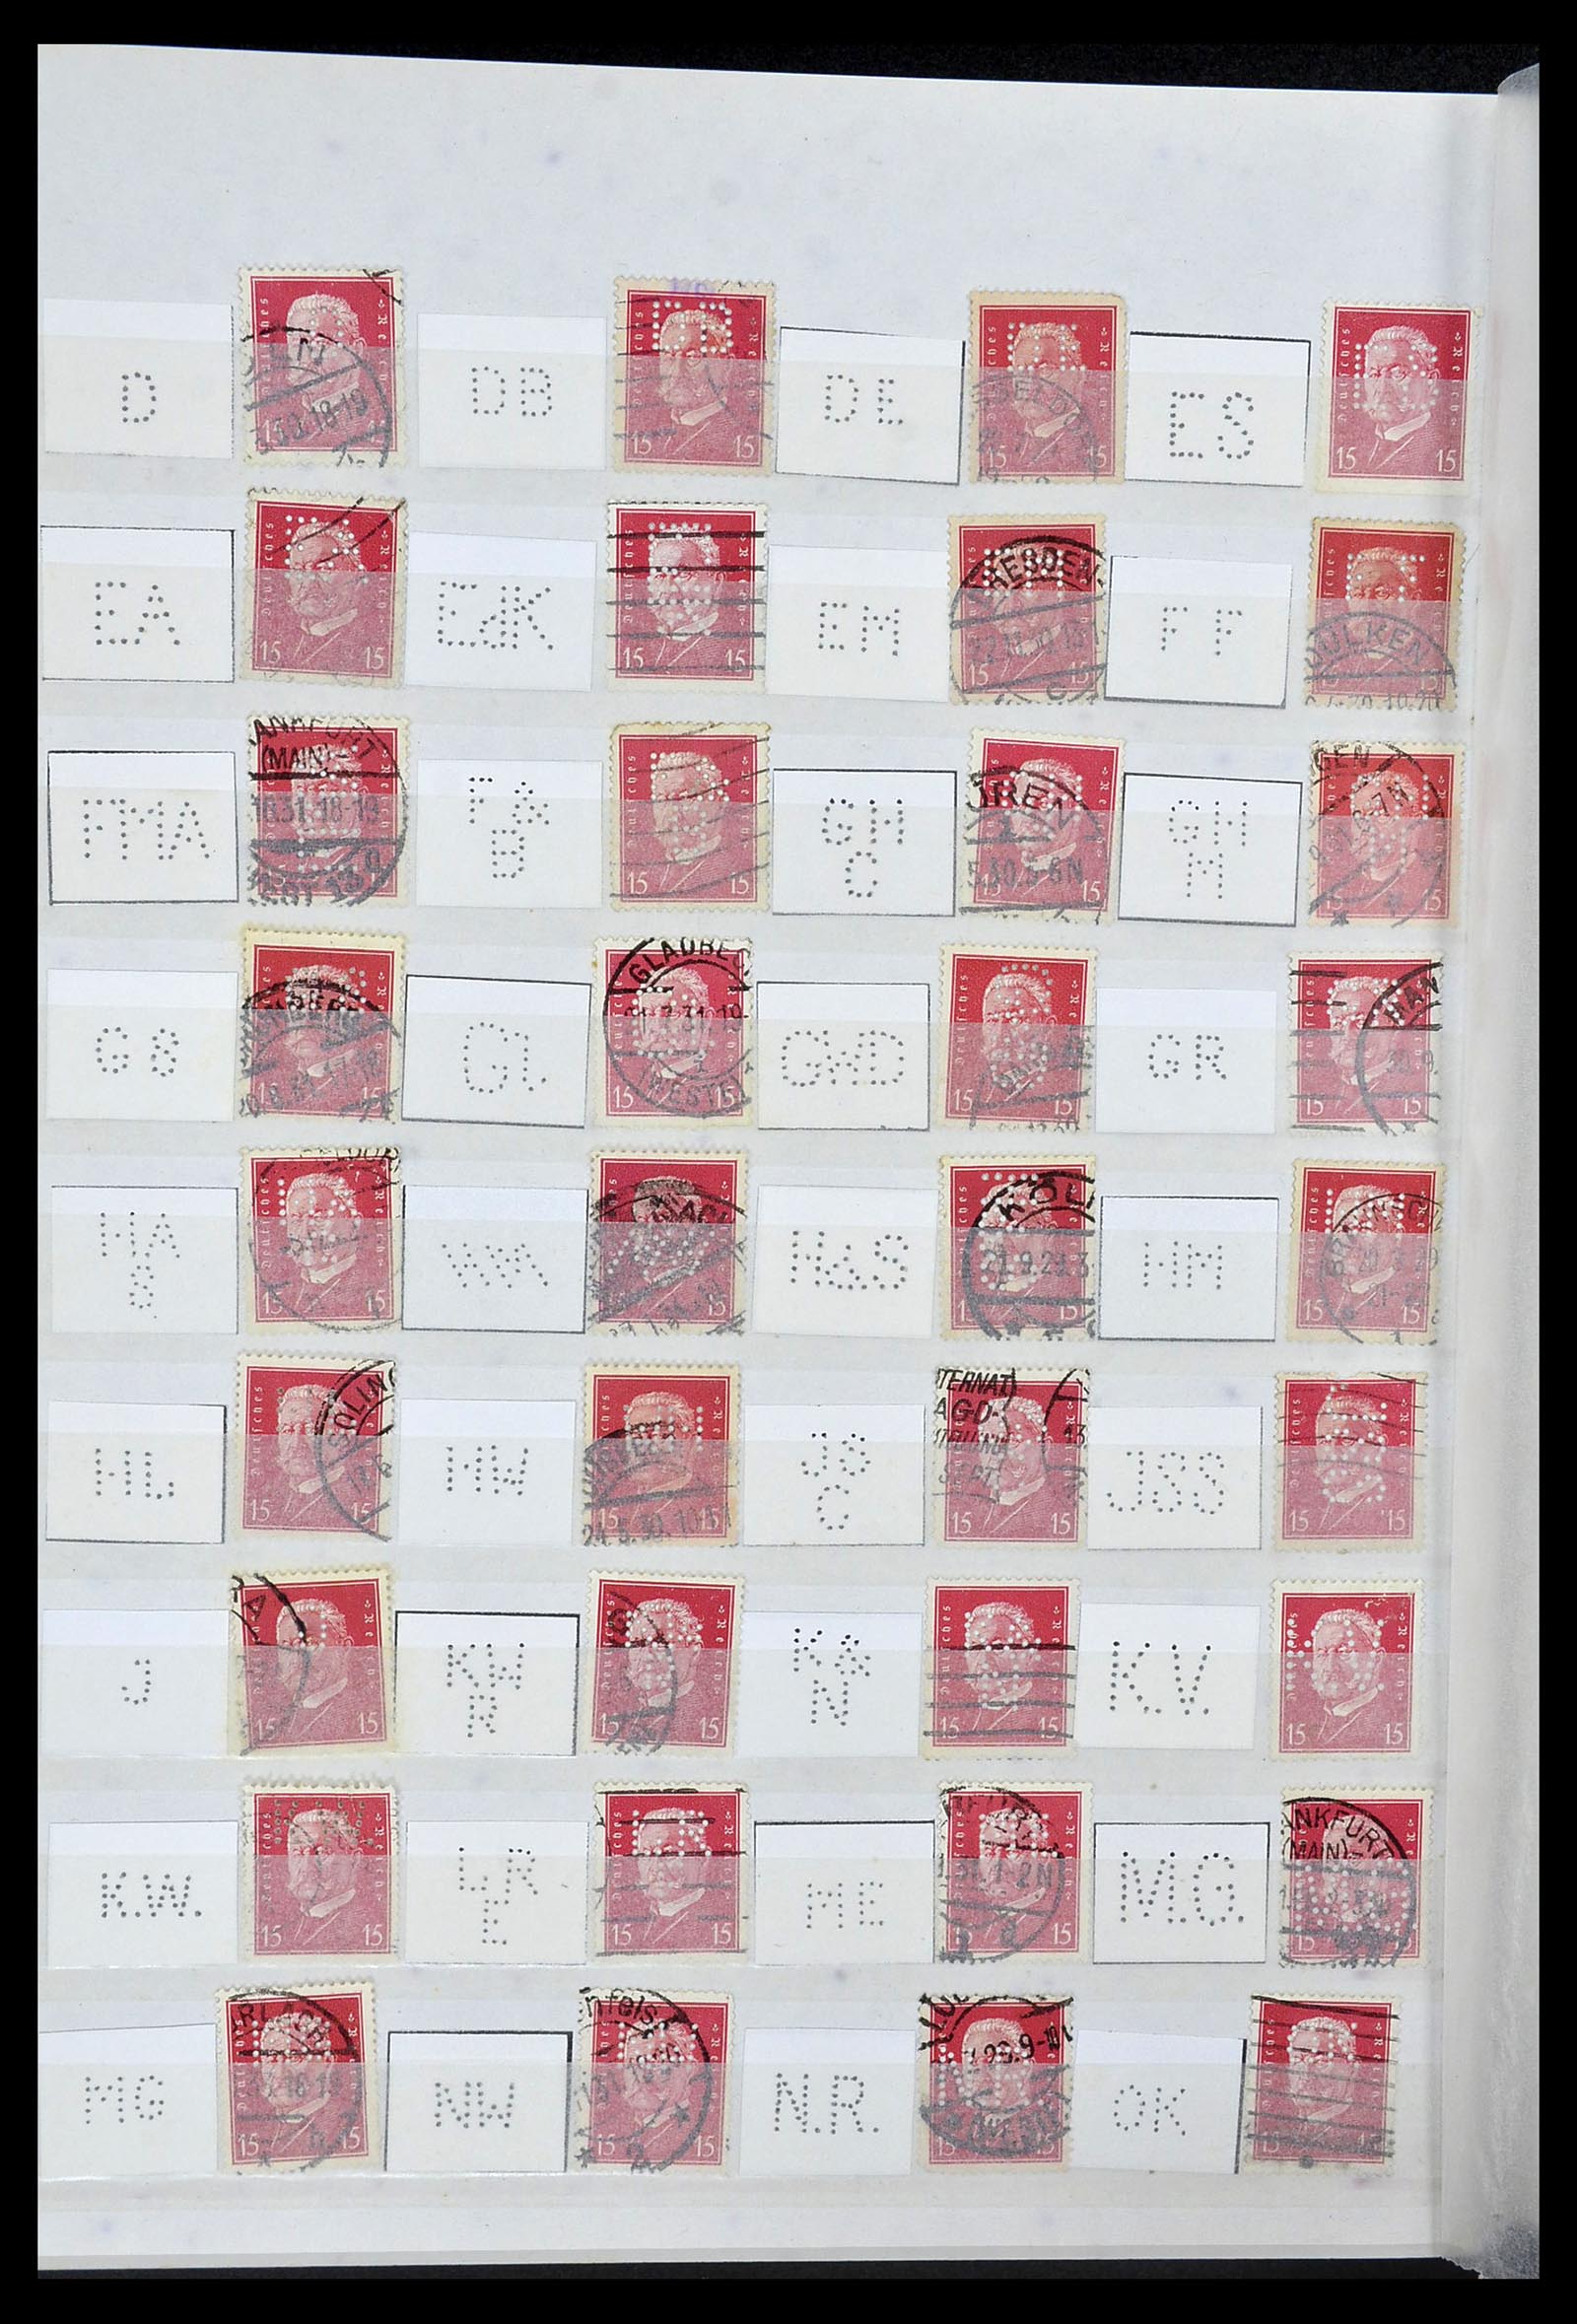 34071 032 - Stamp collection 34071 German Reich perfins 1923-1930.